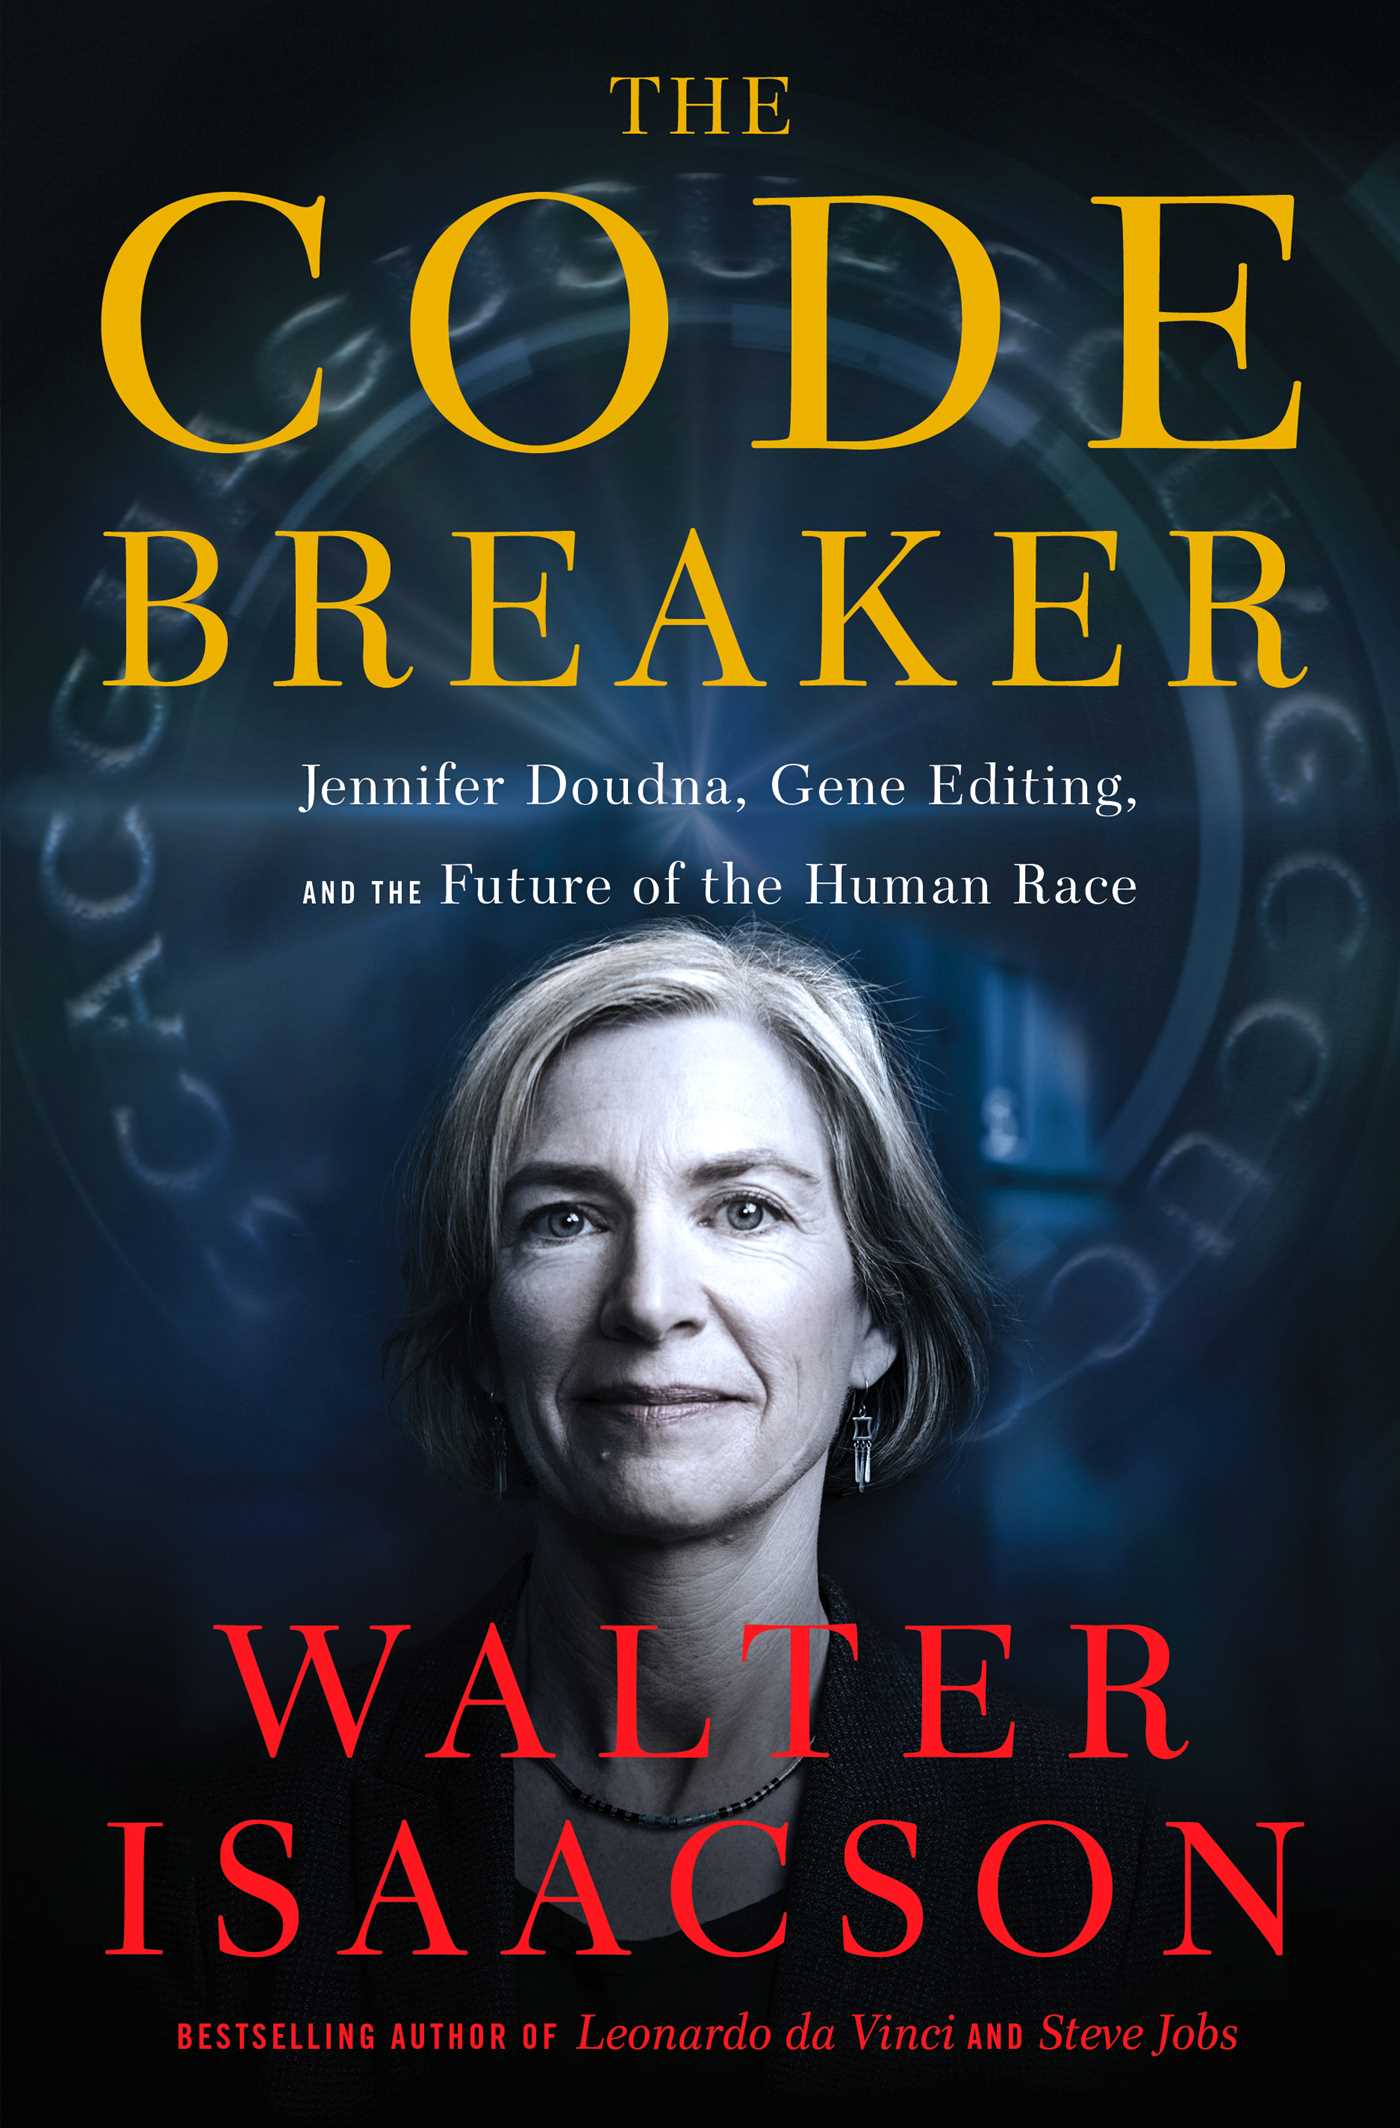 Image for "The Code Breaker"